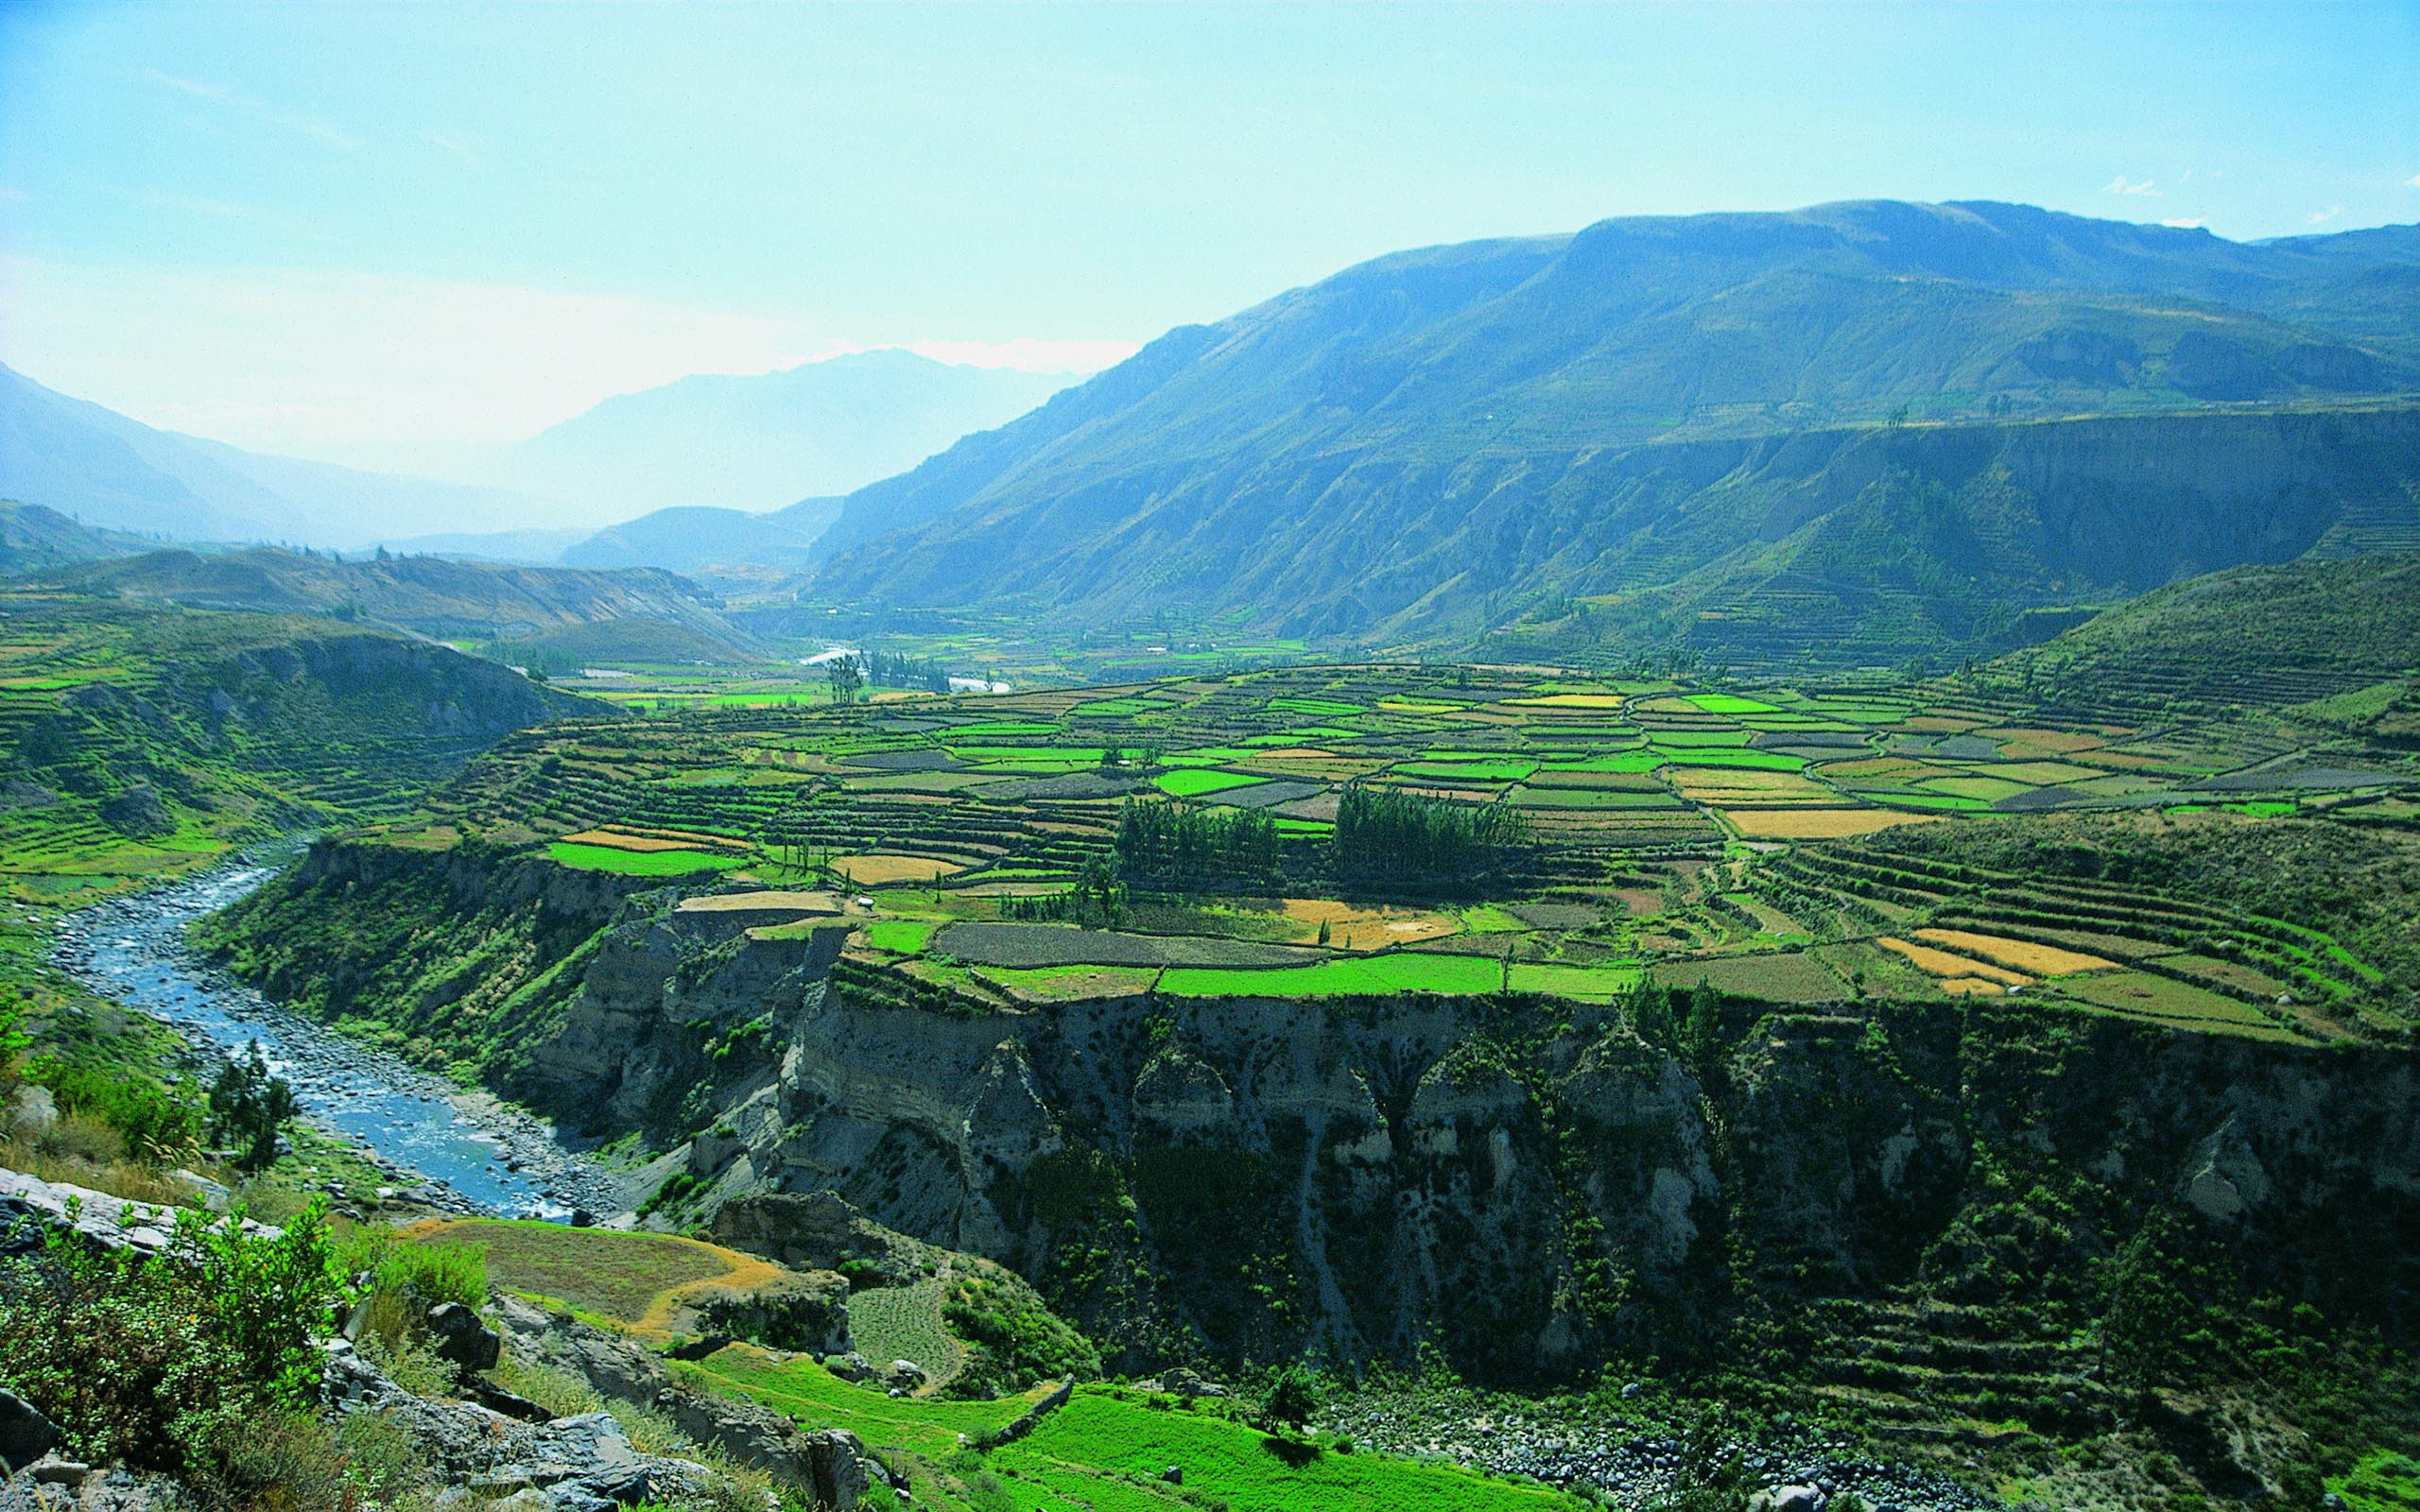 The nature of Peru